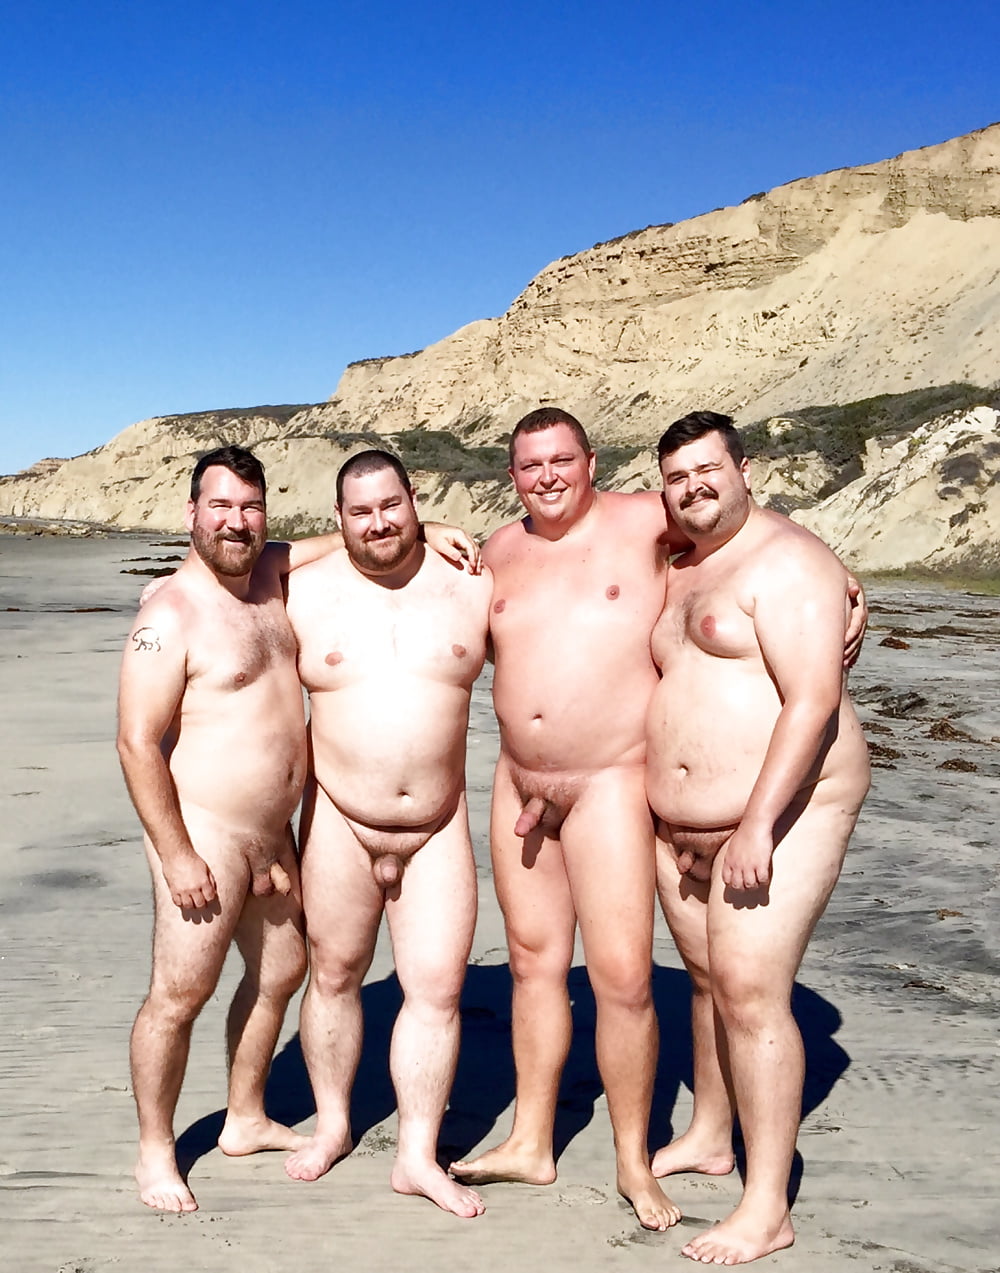 Nude fat people